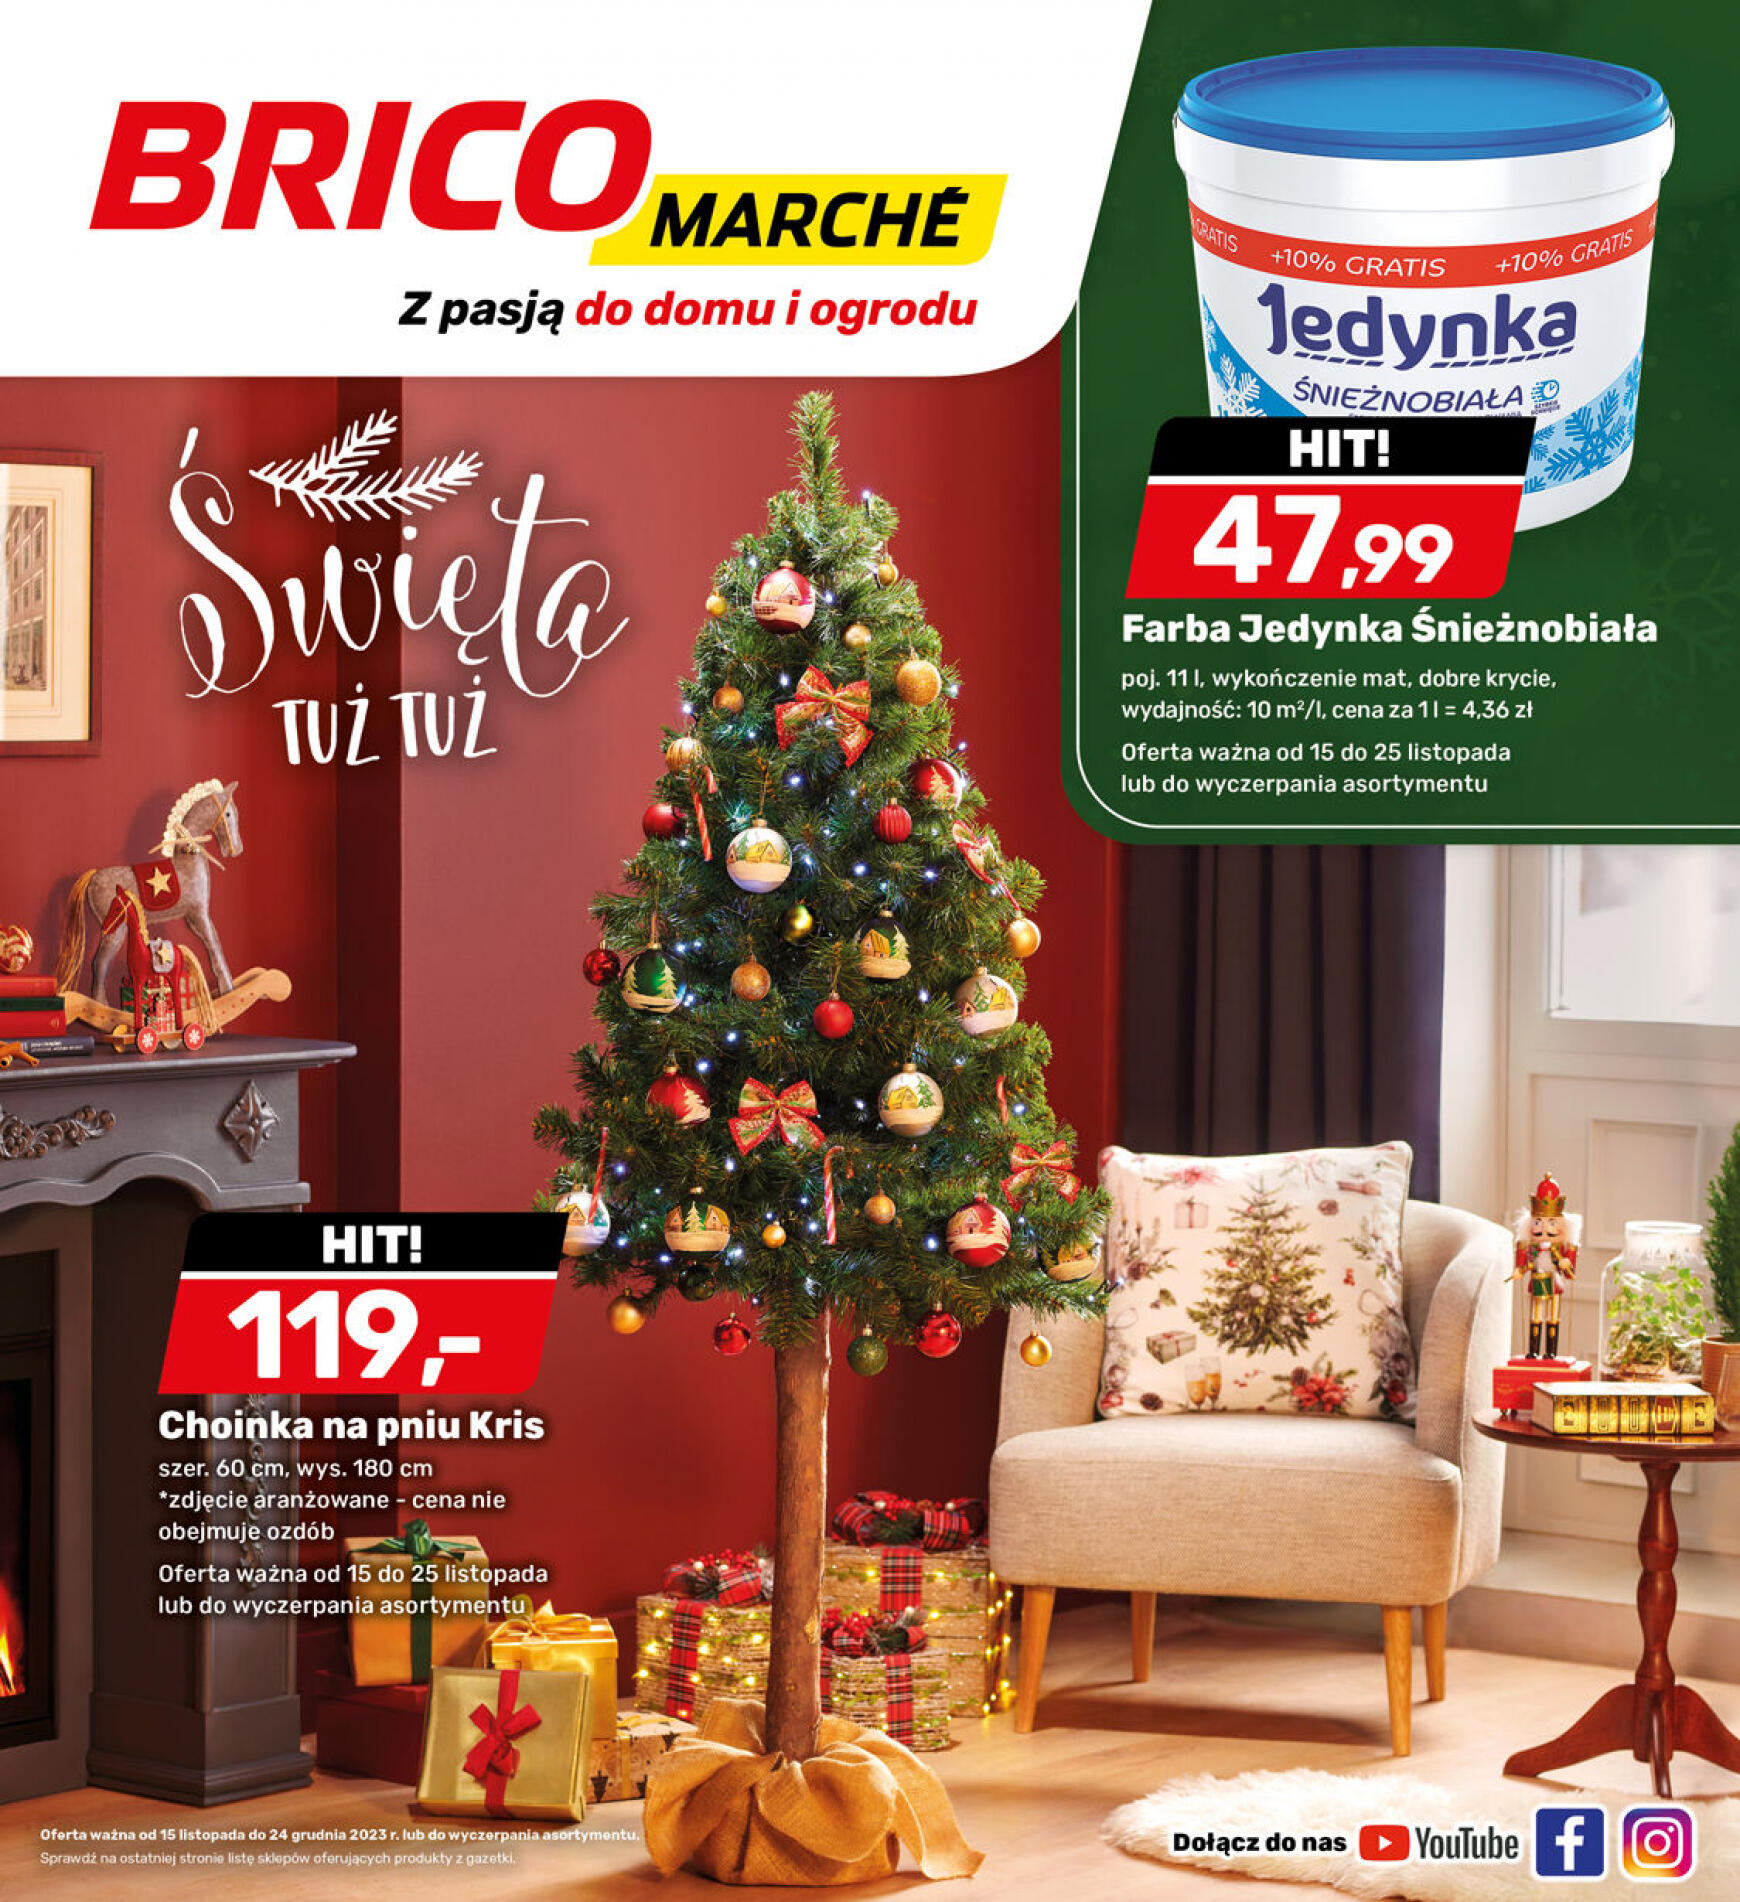 brico-marche - - Bricomarche - page: 10